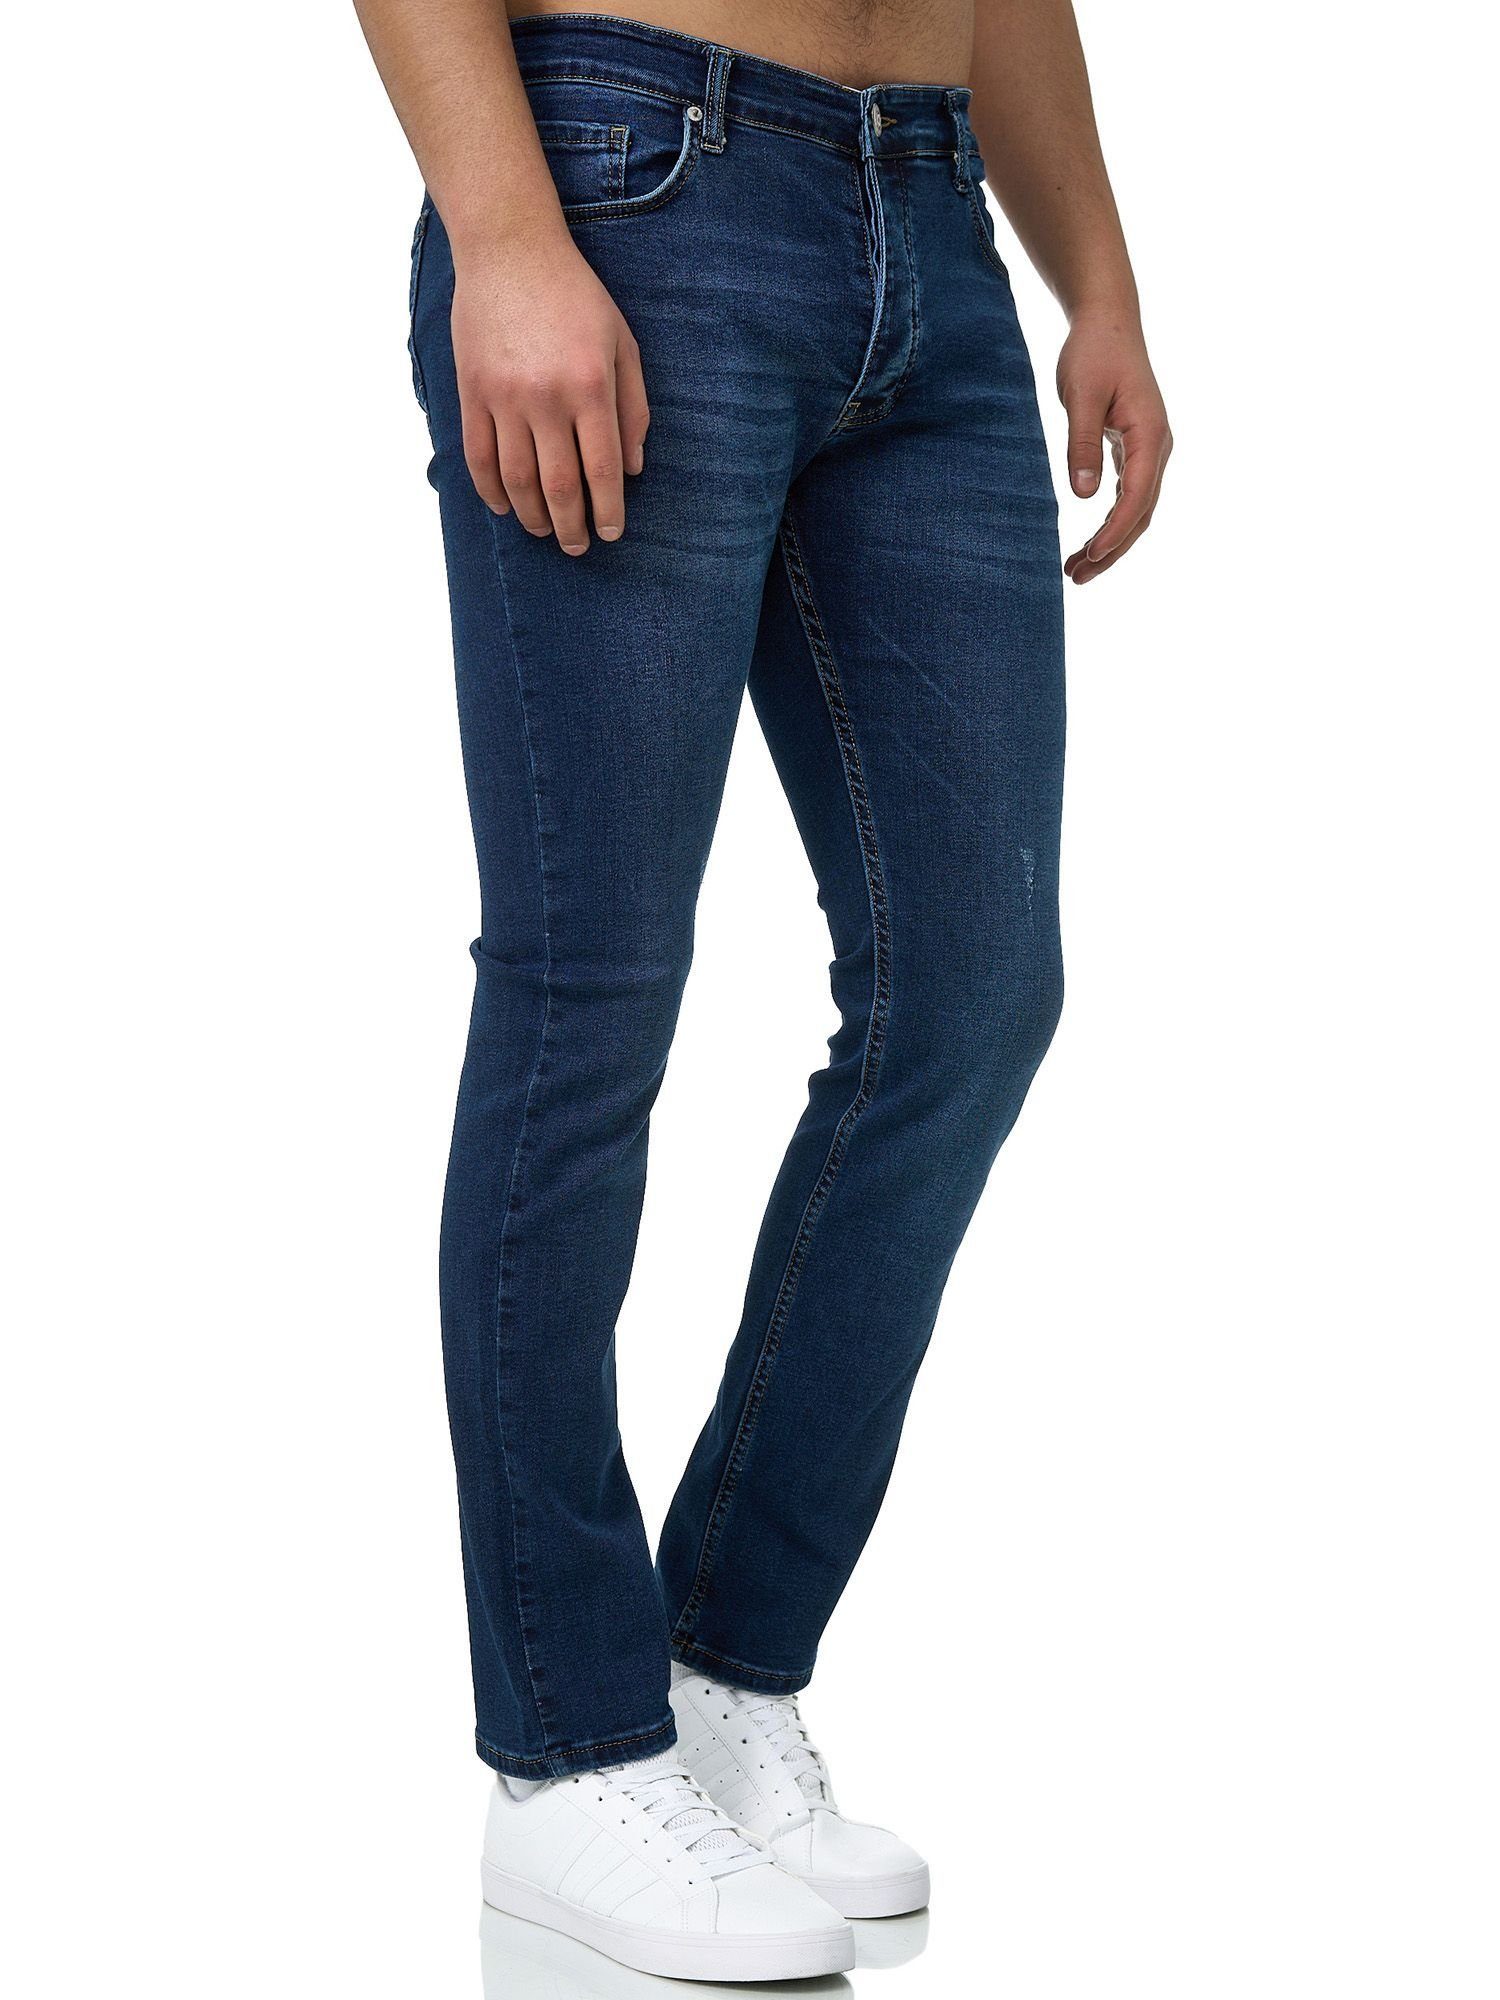 John Kayna Slim-fit-Jeans Herren Jeans Hose Slim Fit Männer Basic Stretch Skinny Denim Designerj (Jeanshose Designerjeans Bootcut, 1-tlg) Freizeit Business Casual 614 Light Blue Used